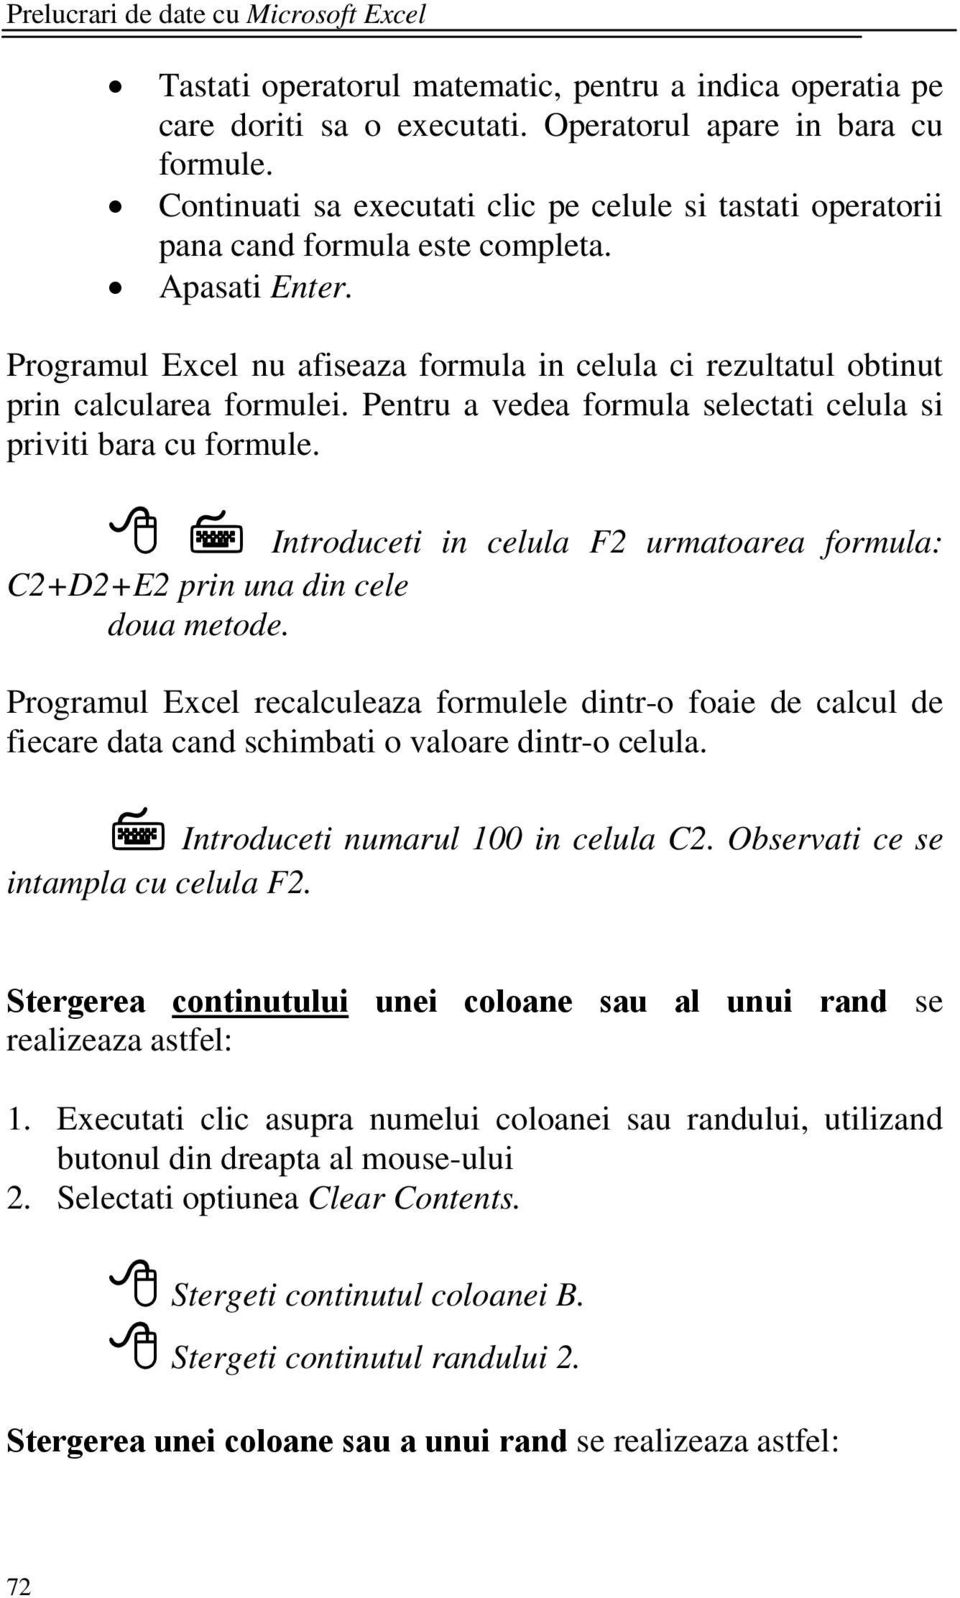 Programul Excel nu afiseaza formula in celula ci rezultatul obtinut prin calcularea formulei. Pentru a vedea formula selectati celula si priviti bara cu formule.